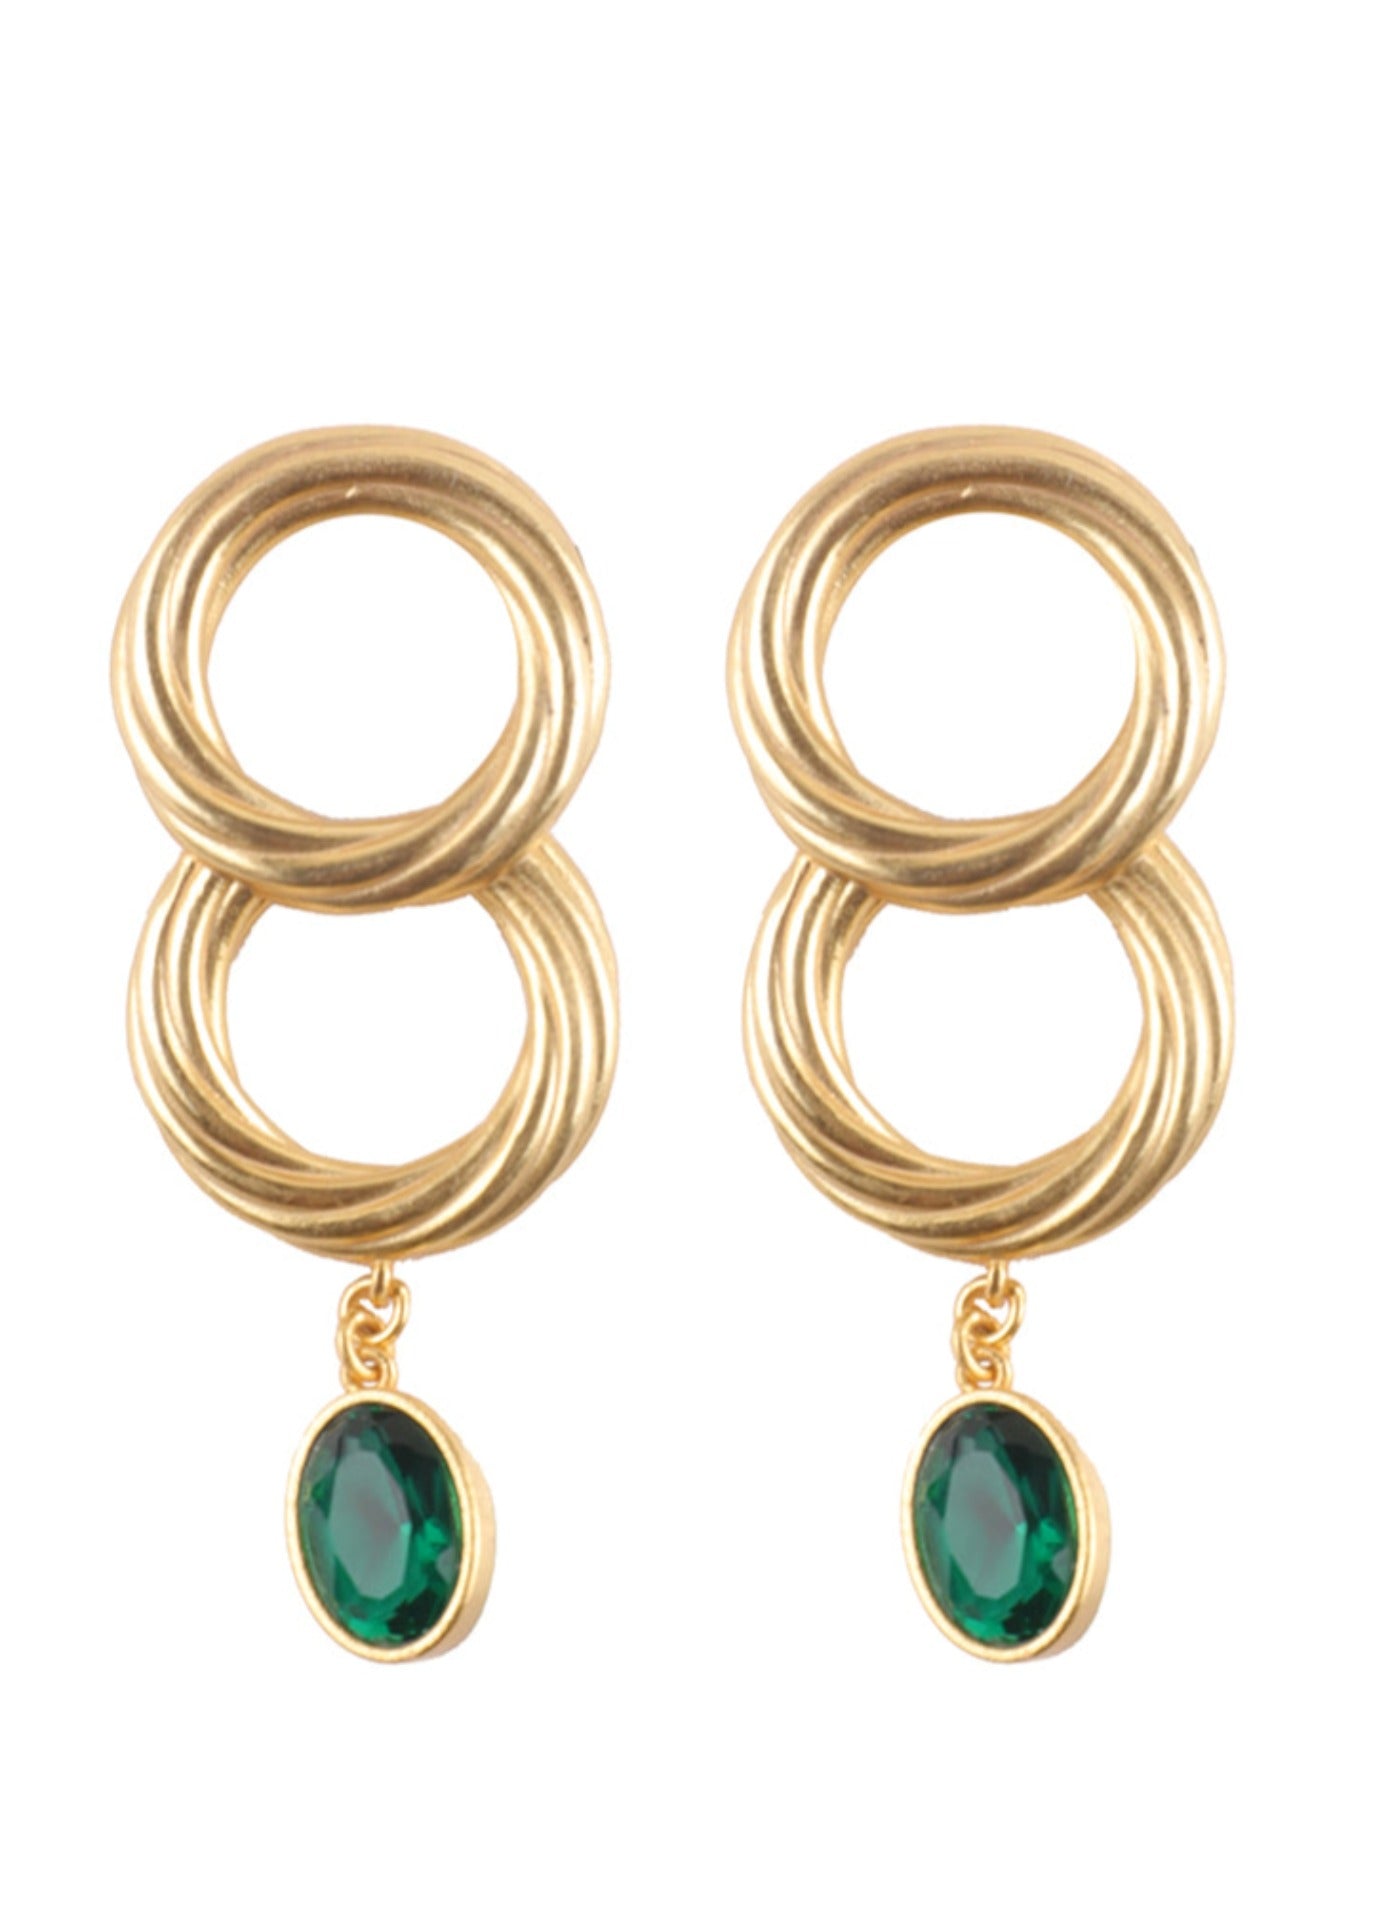 The Emerald Fleur Earrings